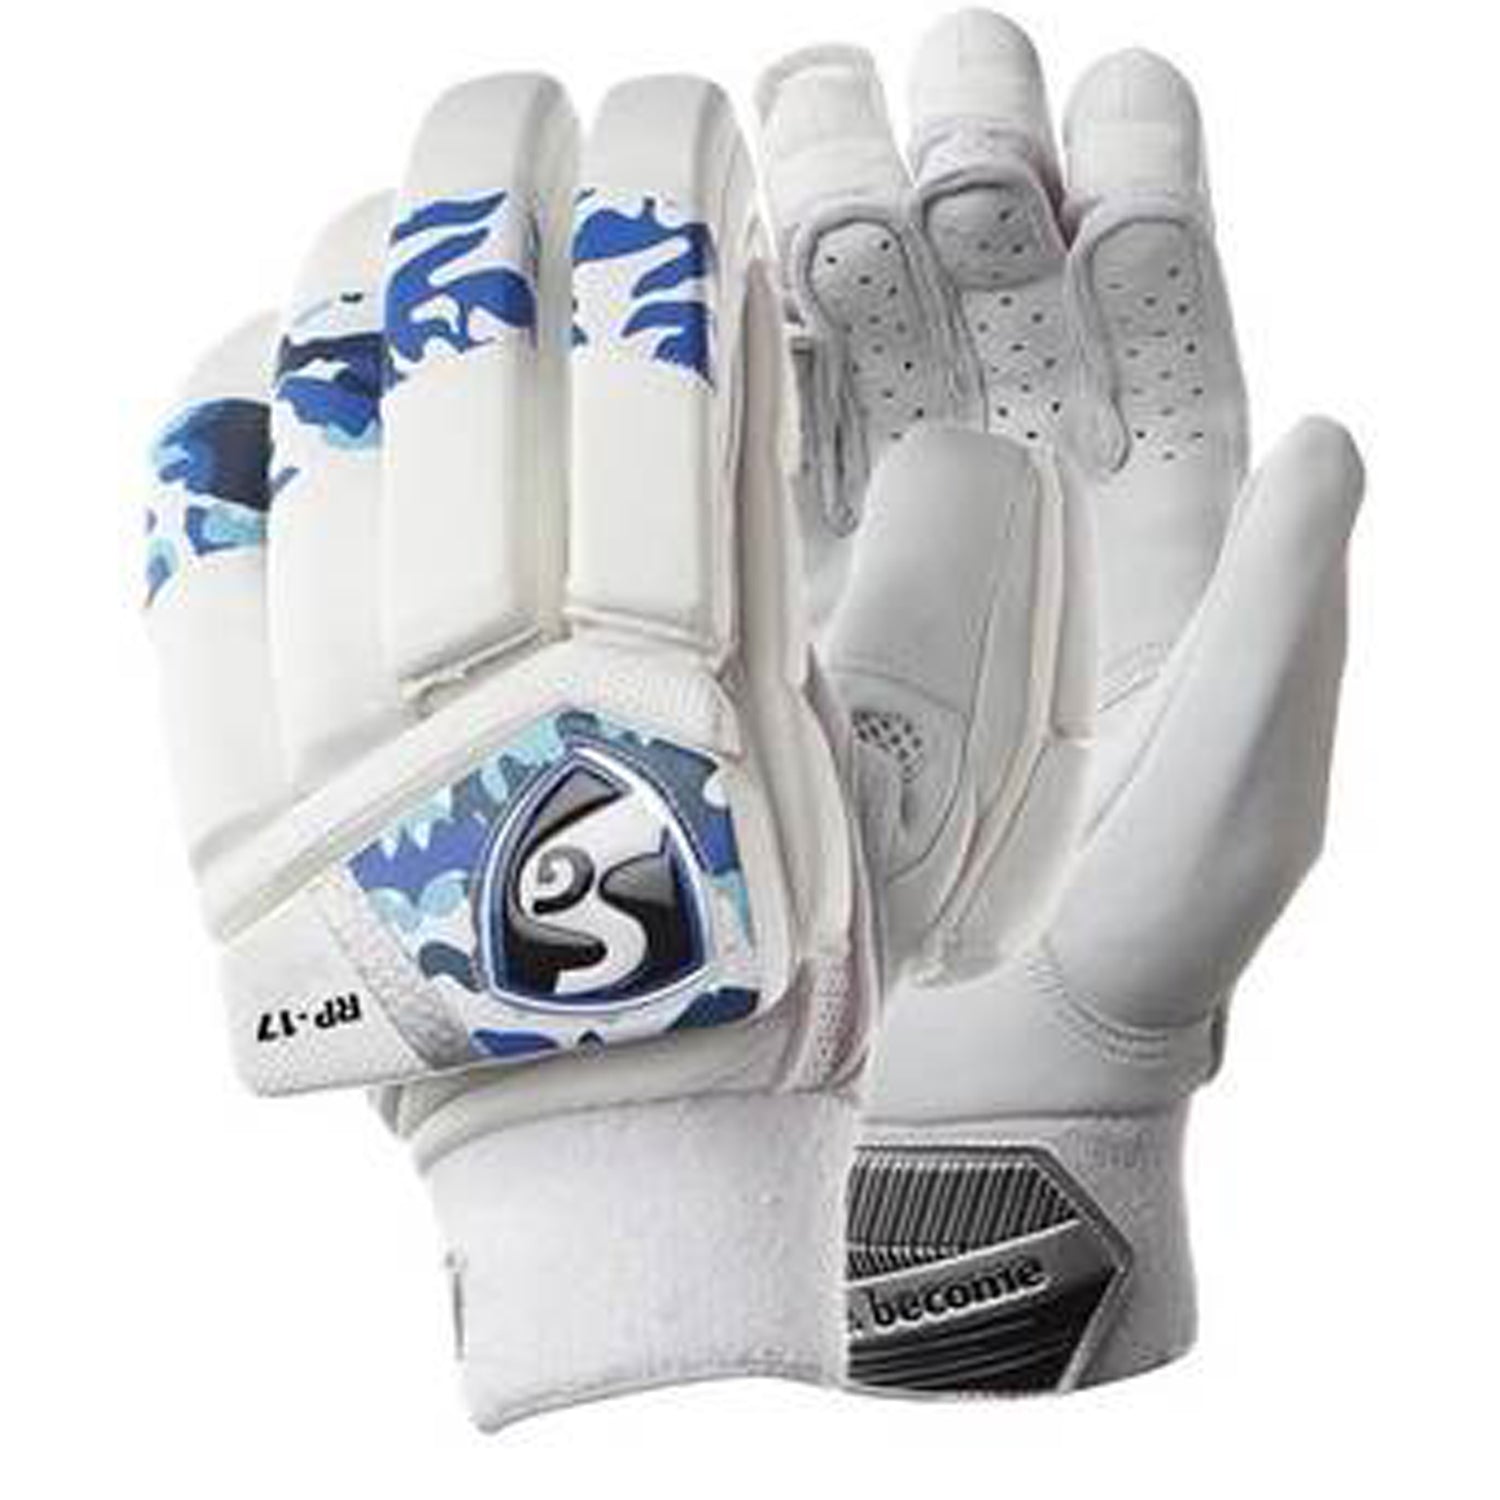 SG Cricket RP17 RH Batting Gloves - Best Price online Prokicksports.com